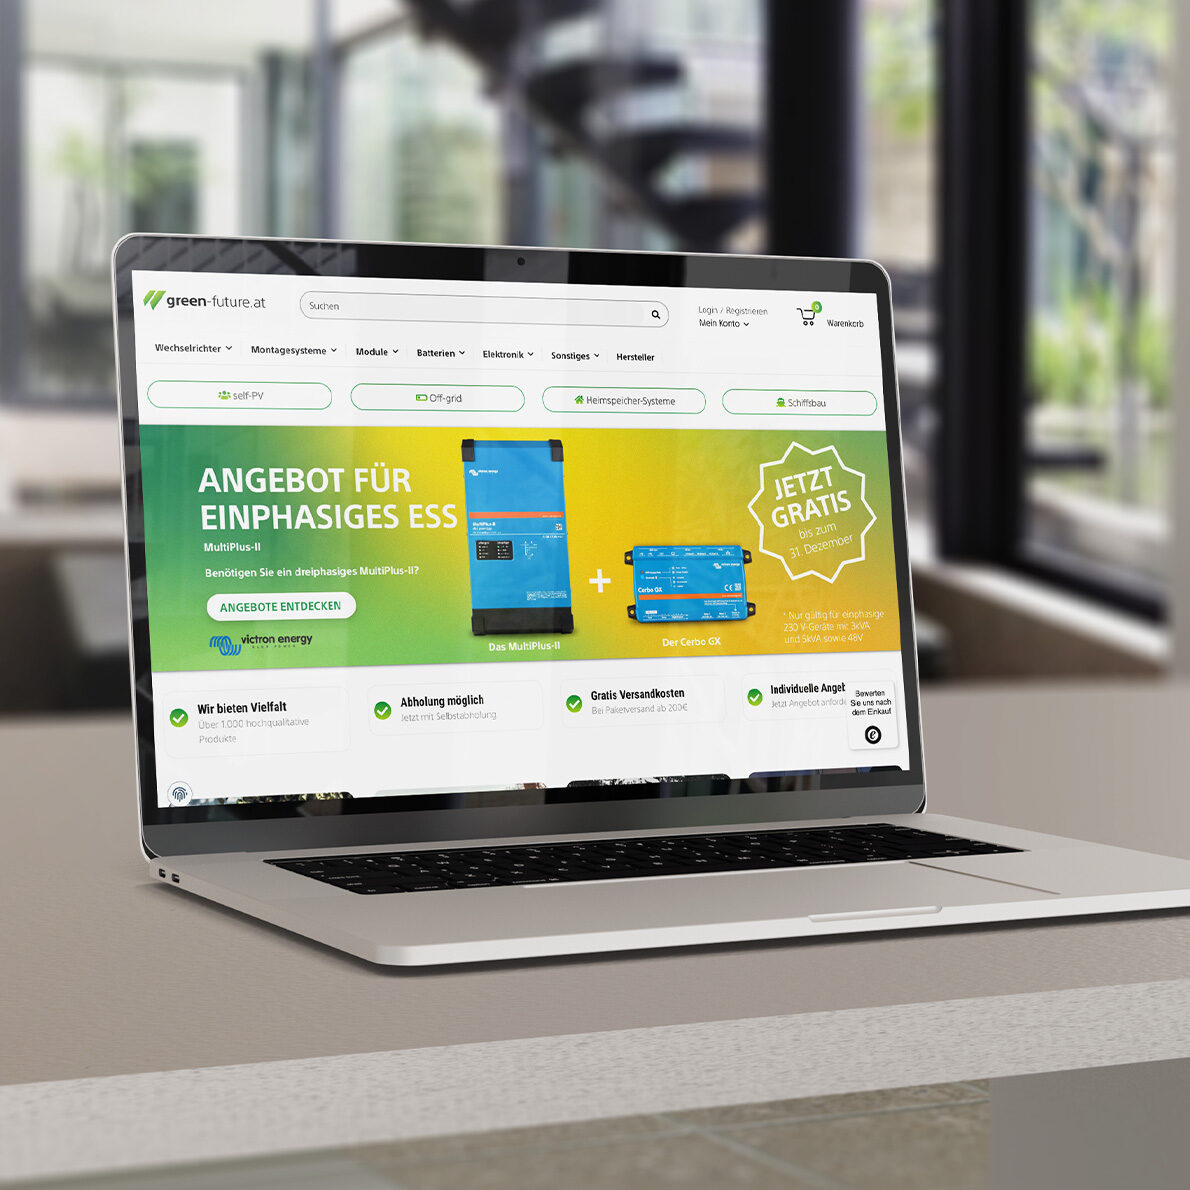 Macbook Auf Tisch Mit Green Futureat Website Geöffnet